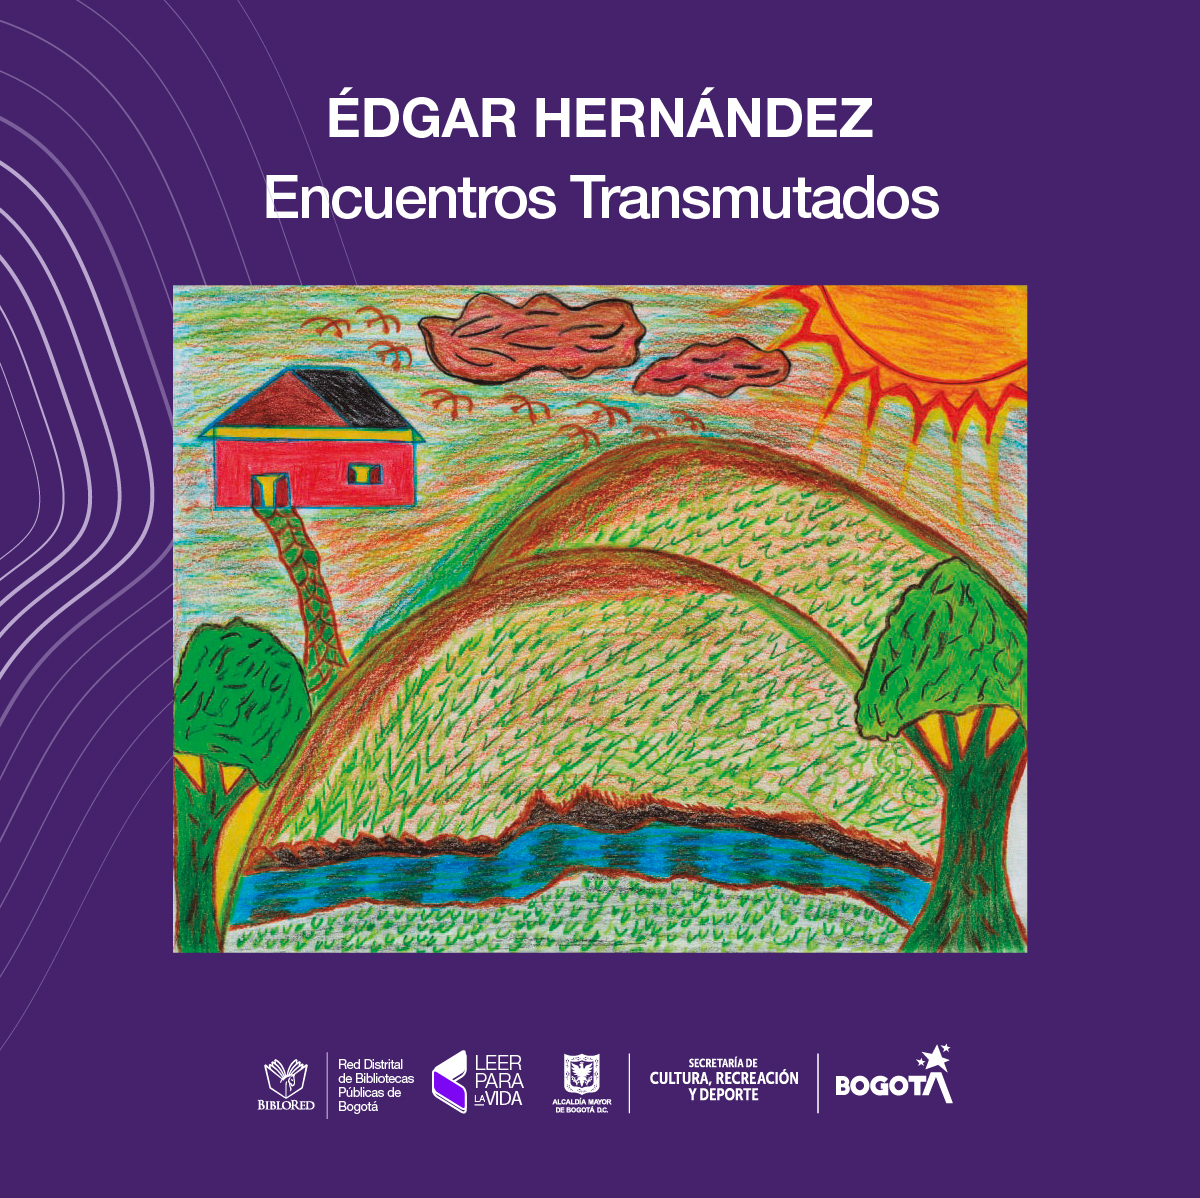 Edgar Hernández